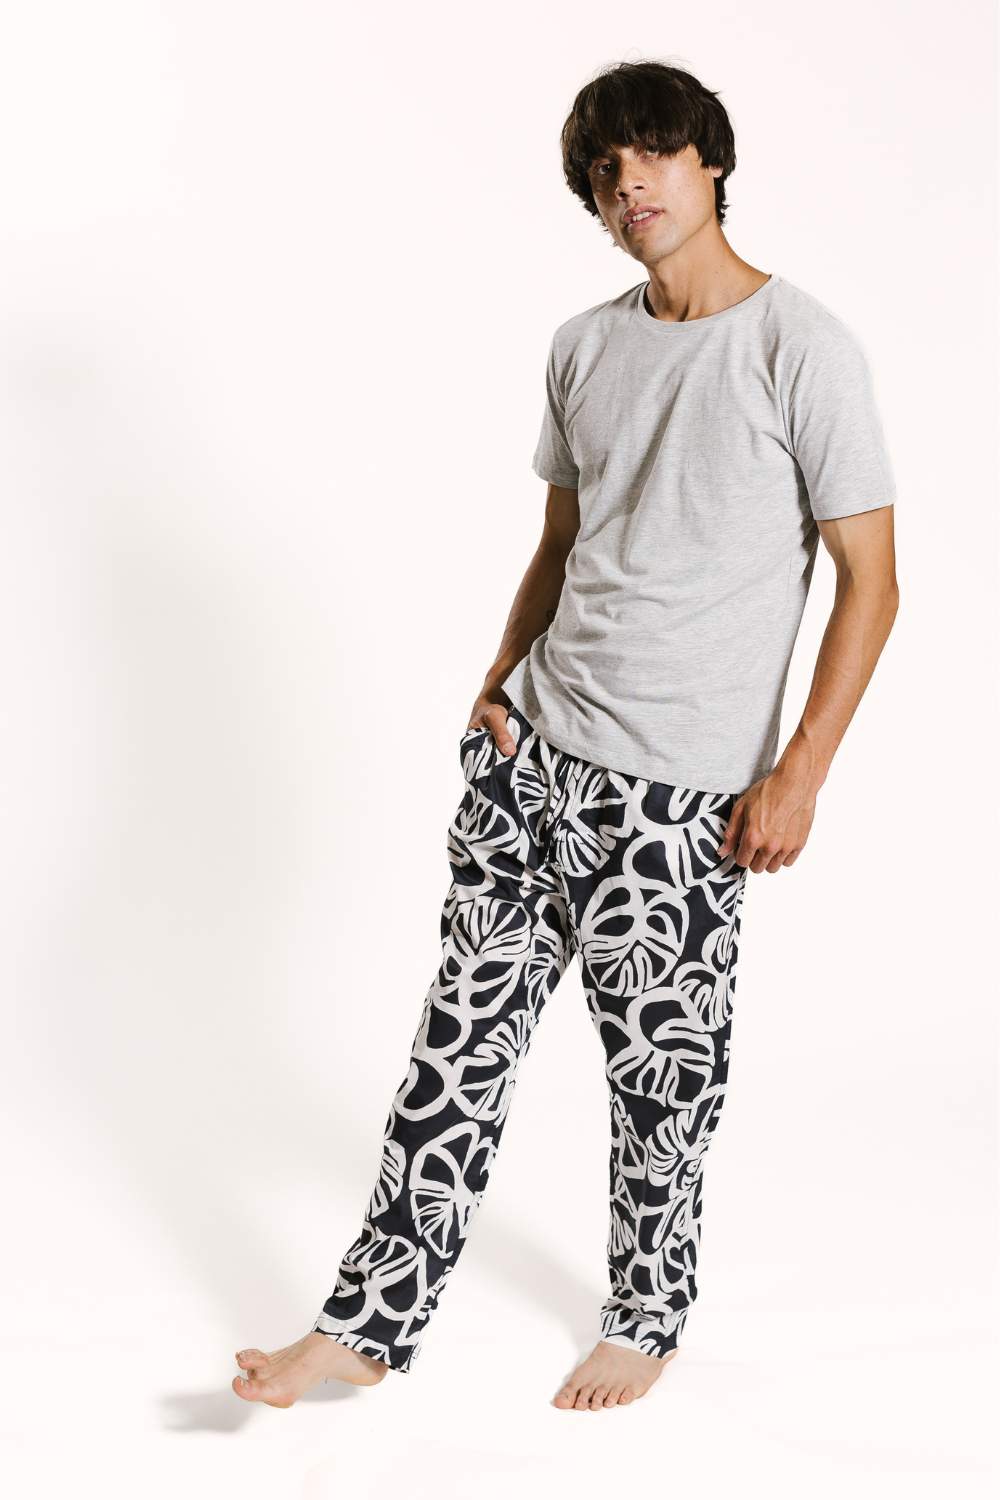 Model wearing mens cotton pyjama bottoms set by Drift Sleepwear